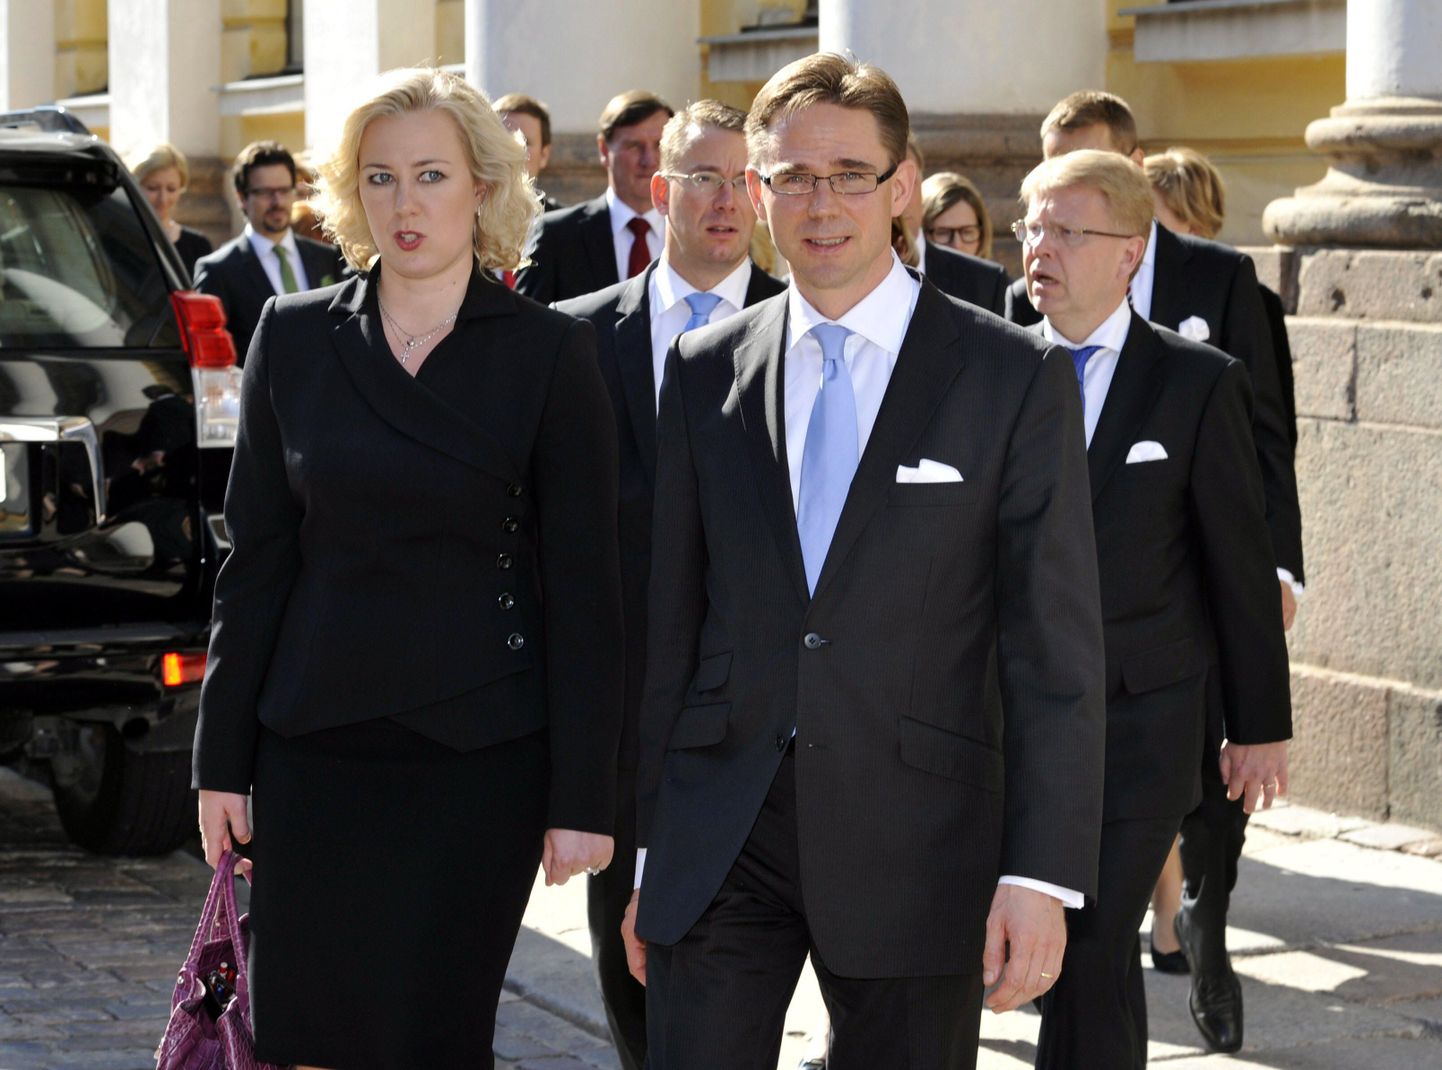 Soome rahandusminister Jutta Urpilainen ja valitsusjuht Jürki Katainen.